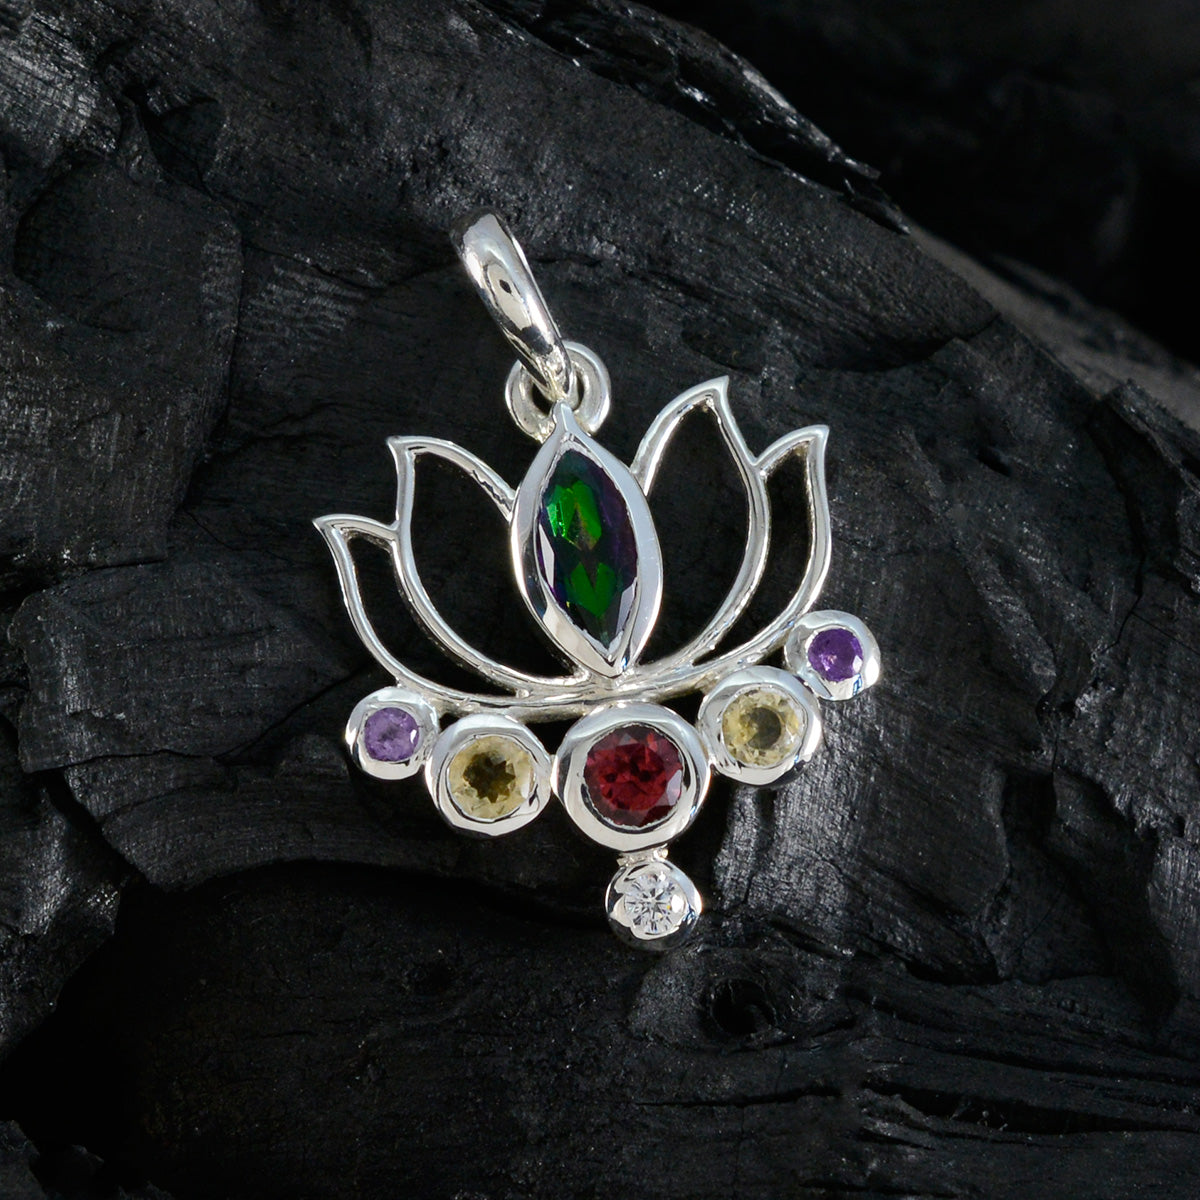 Riyo Spunky Gems Silberanhänger mit mehreren Facetten, mehreren Farben und mehreren Steinen, Geschenk zur Verlobung